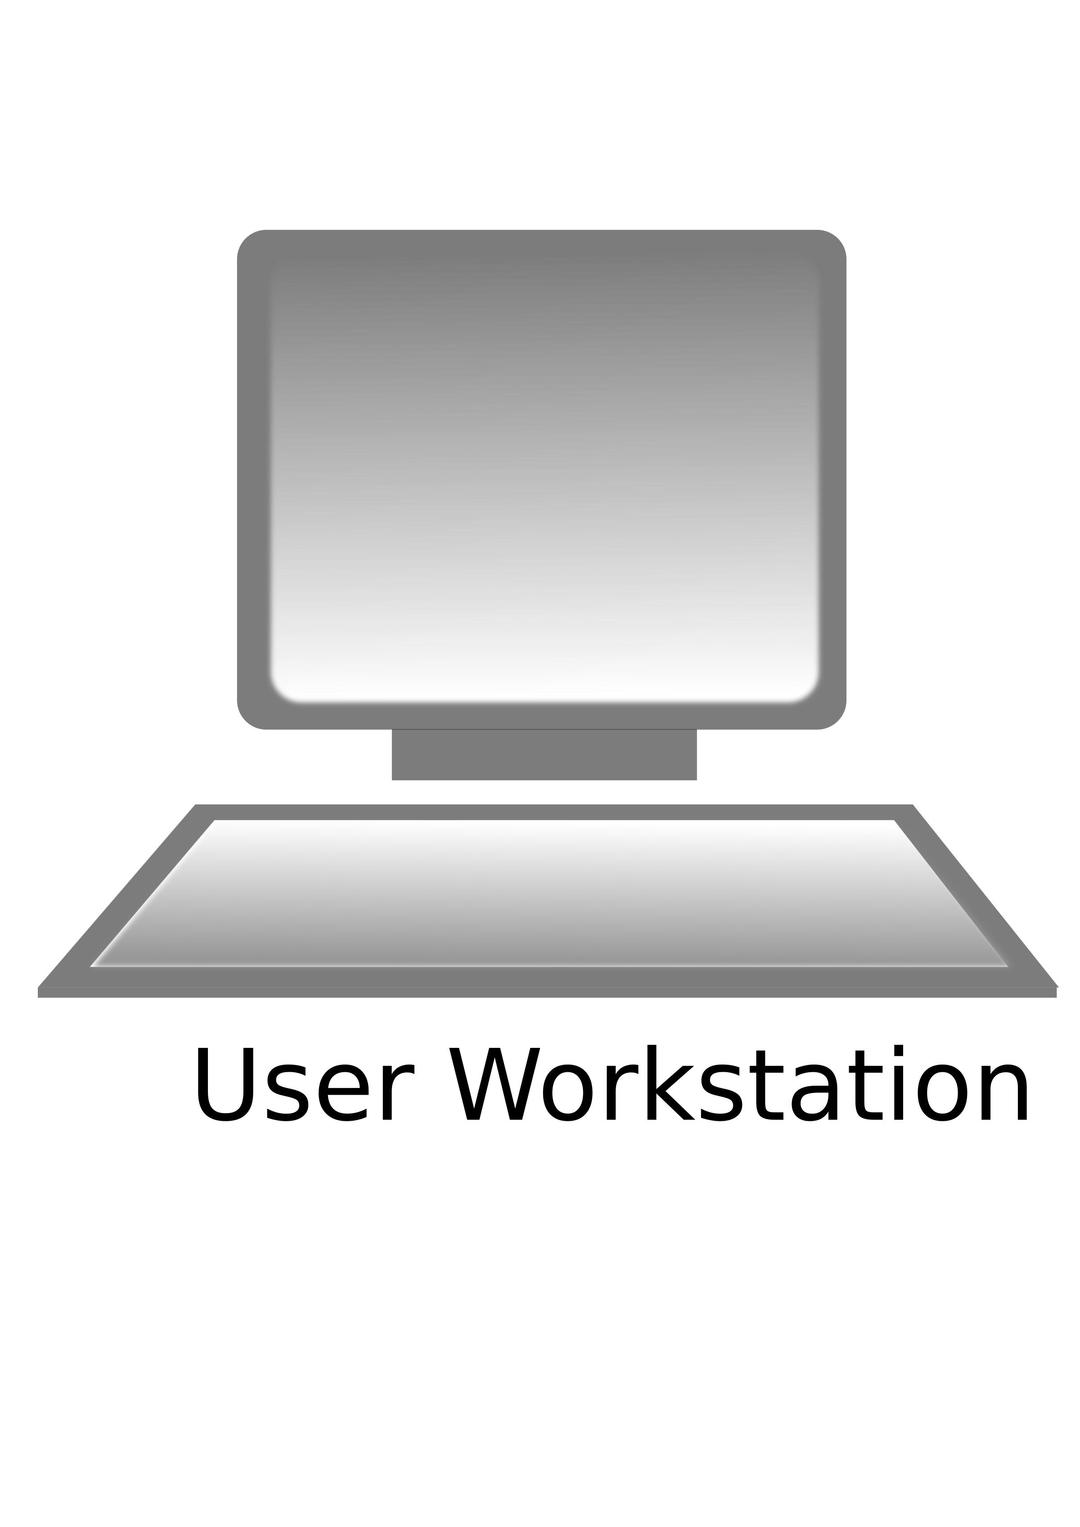 User Workstation png transparent